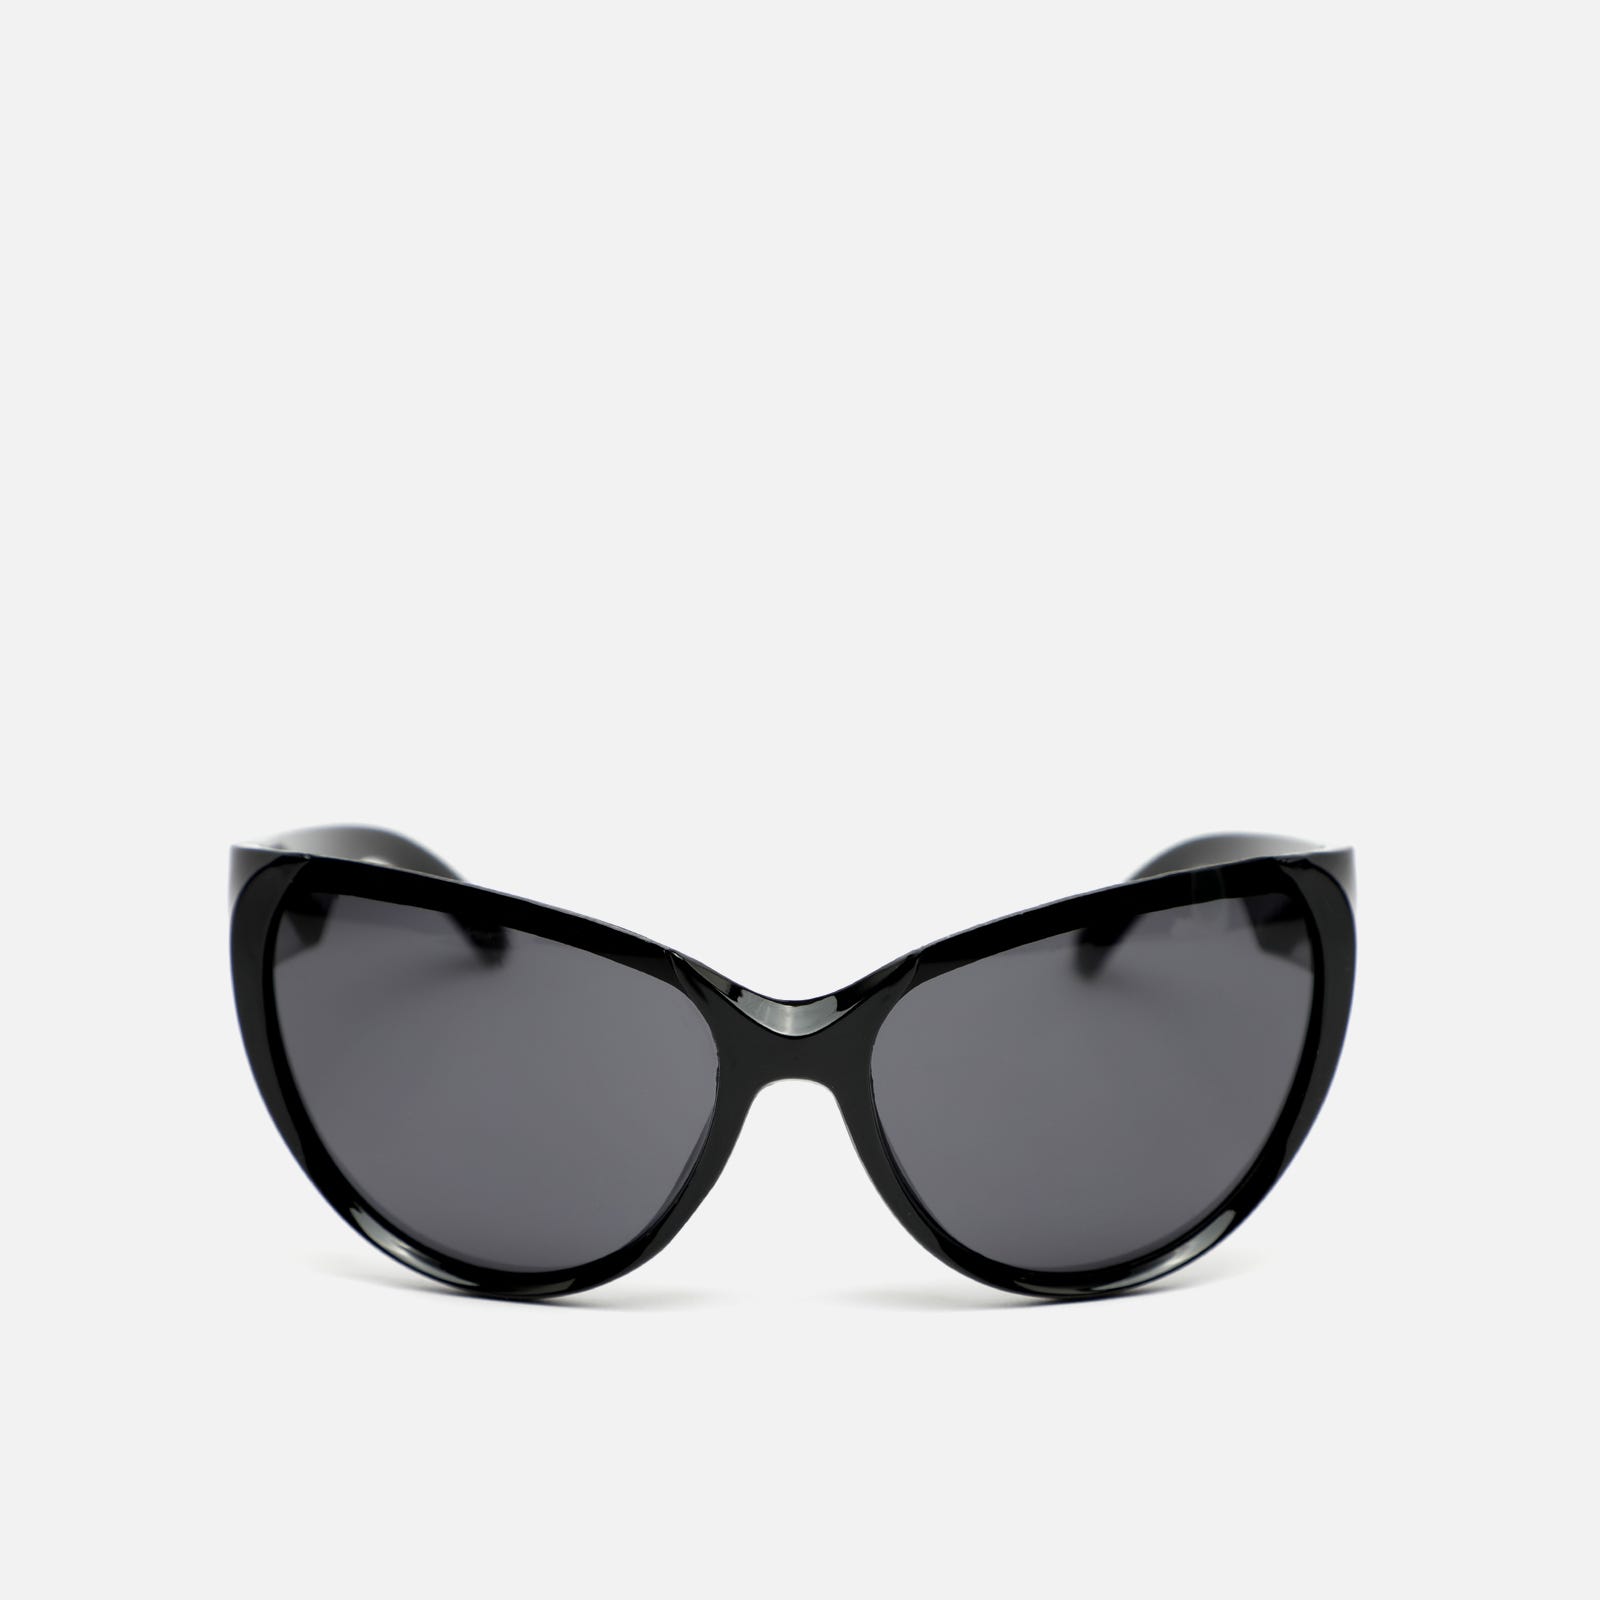 Fly gafas de sol ojo de gato con montura de pasta